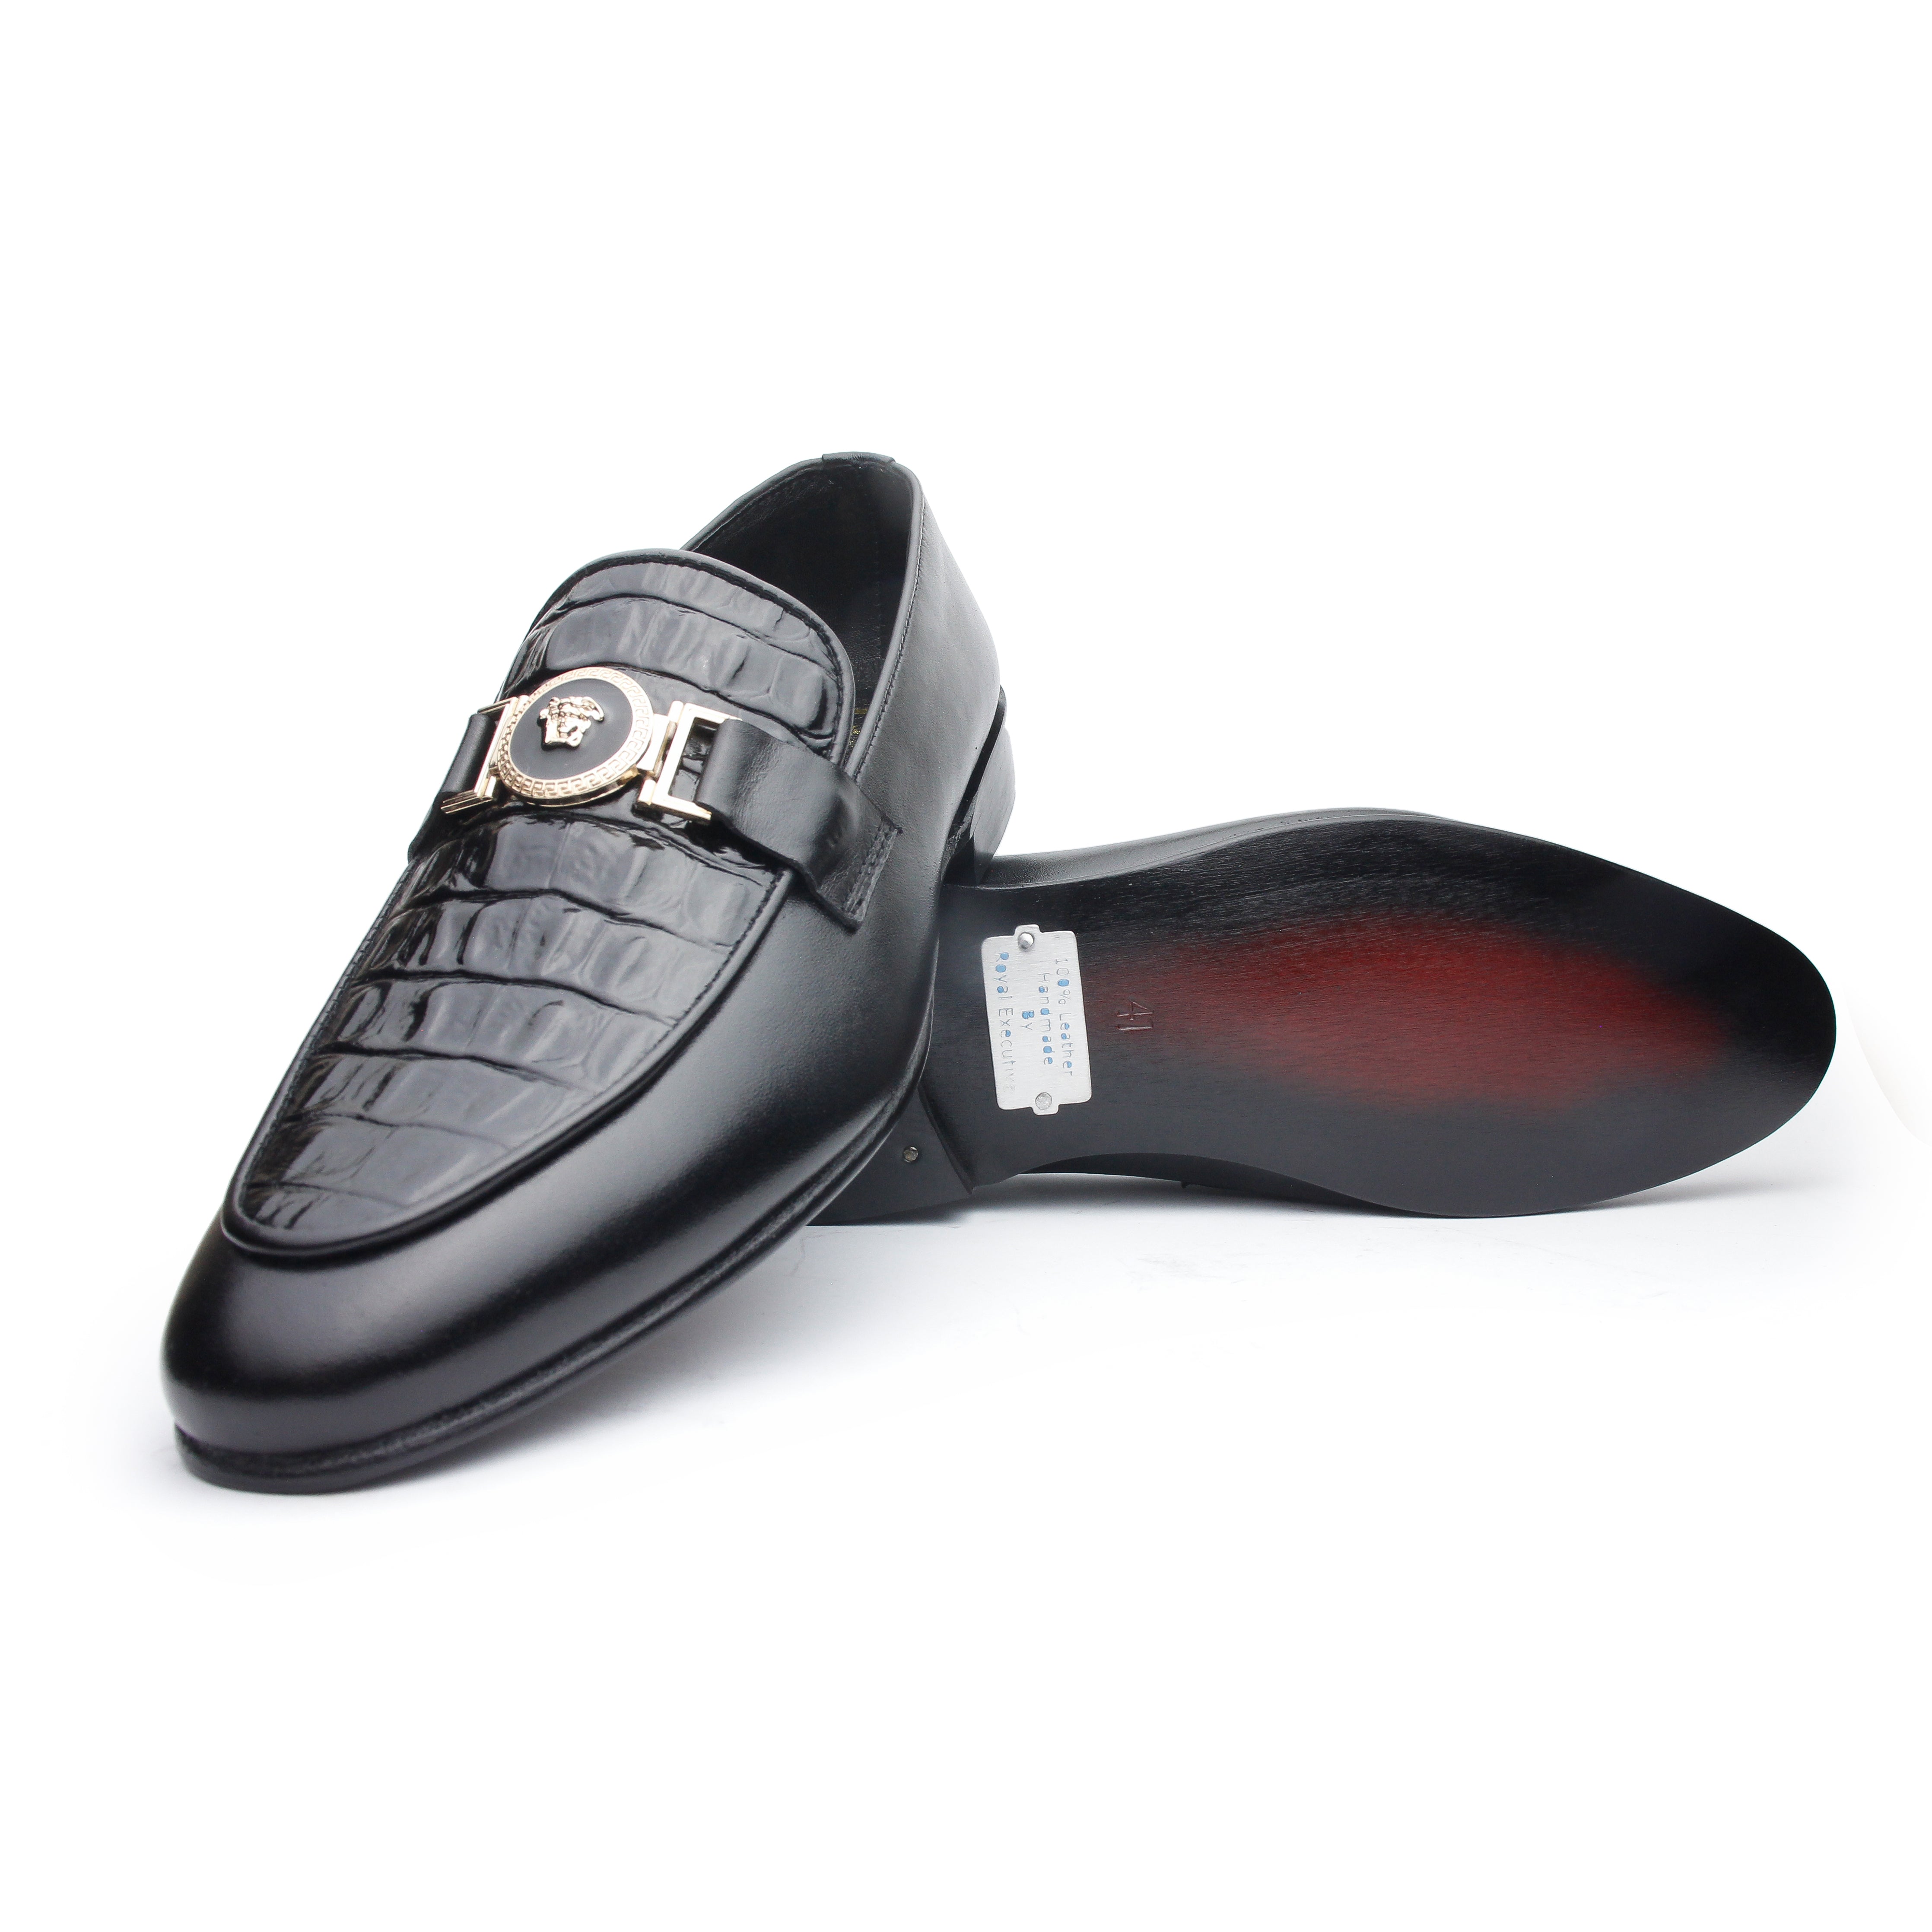 V Ajgar Black - Premium Shoes from royalstepshops - Just Rs.9000! Shop now at ROYAL STEP